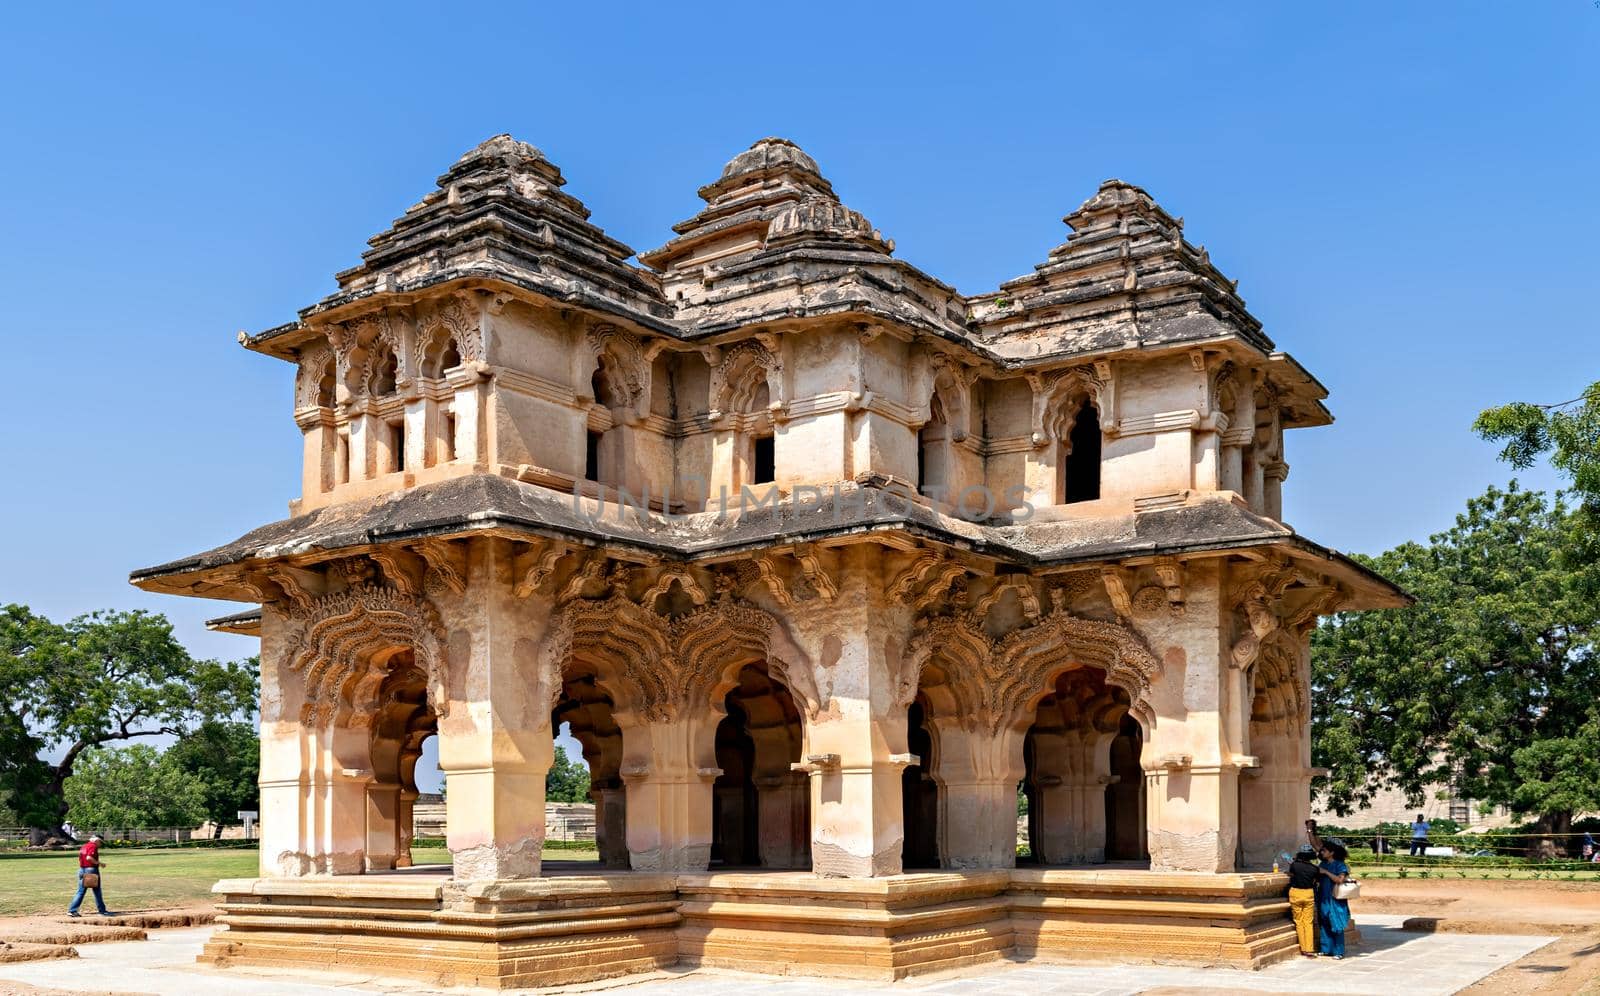 Hampi,Karnataka, India-November 8th, 2018: Palace of Lotus , also known as 'Lotus Mahal' in Hampi, Karnataka, India.